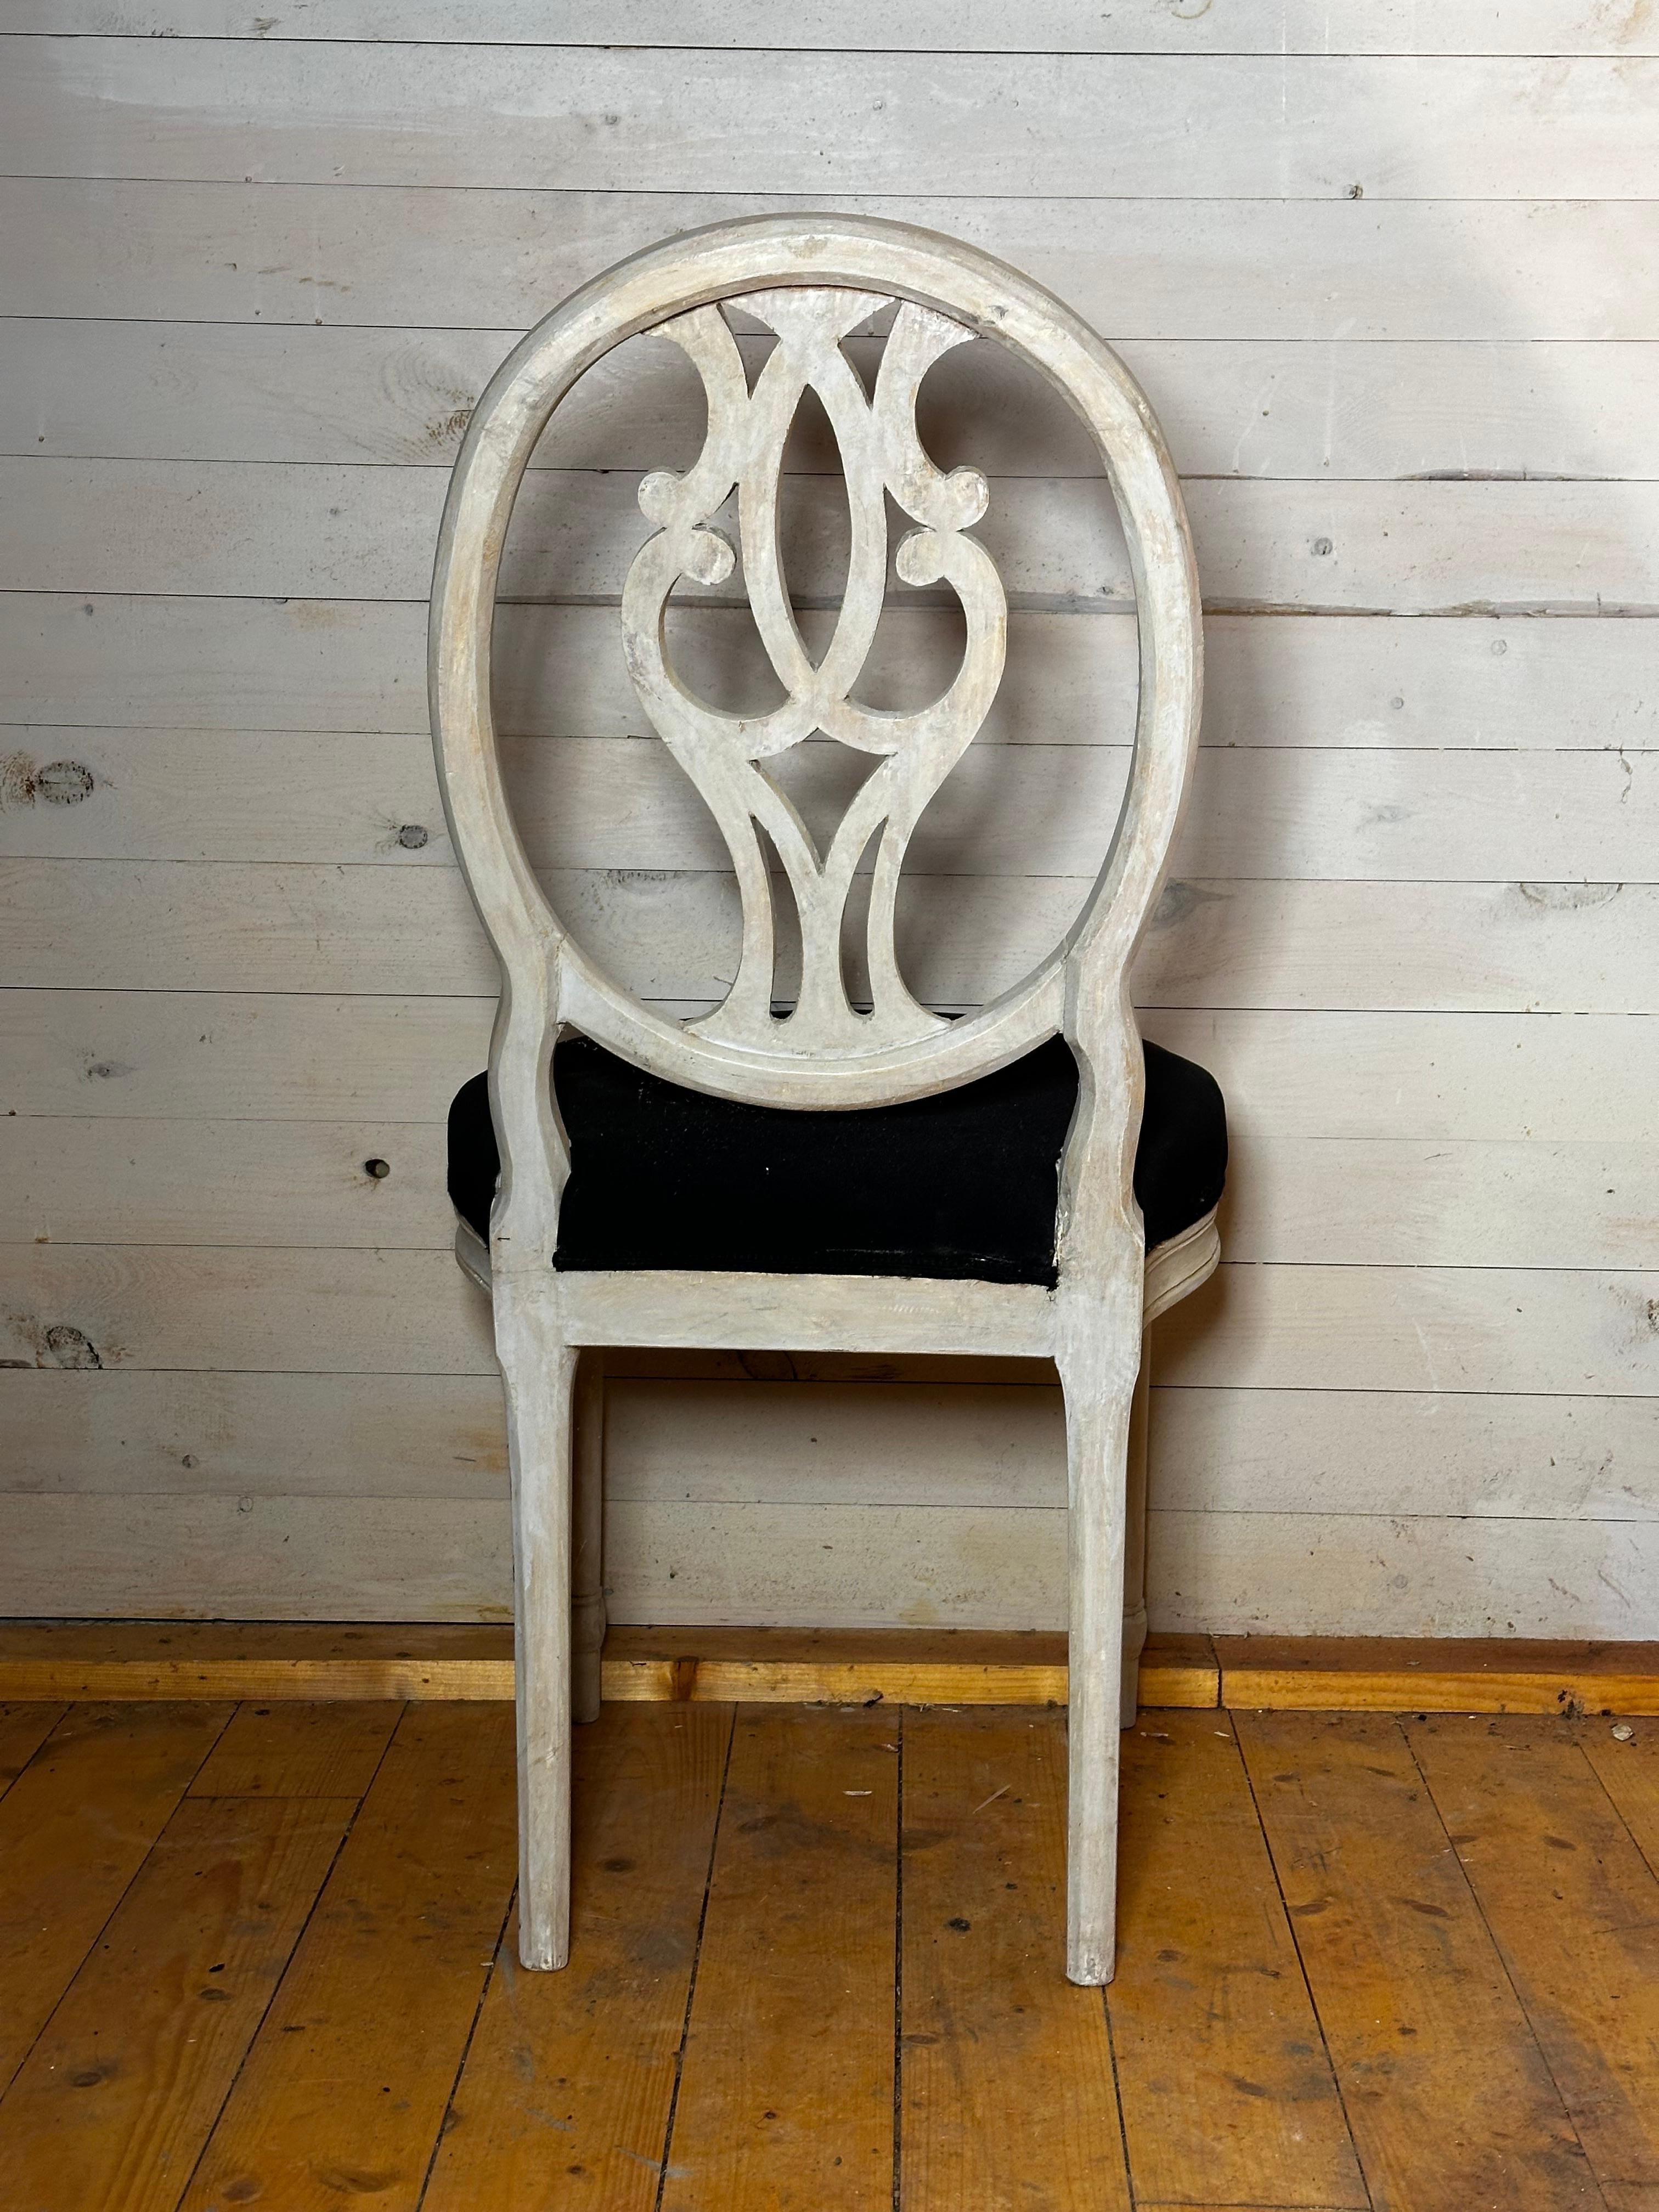 Paire de chaises suédoises vers 1840. Le dos est très inhabituel et pourrait être considéré comme un double G, en référence au roi Gustave III de Suède.
Il y a deux paires.
